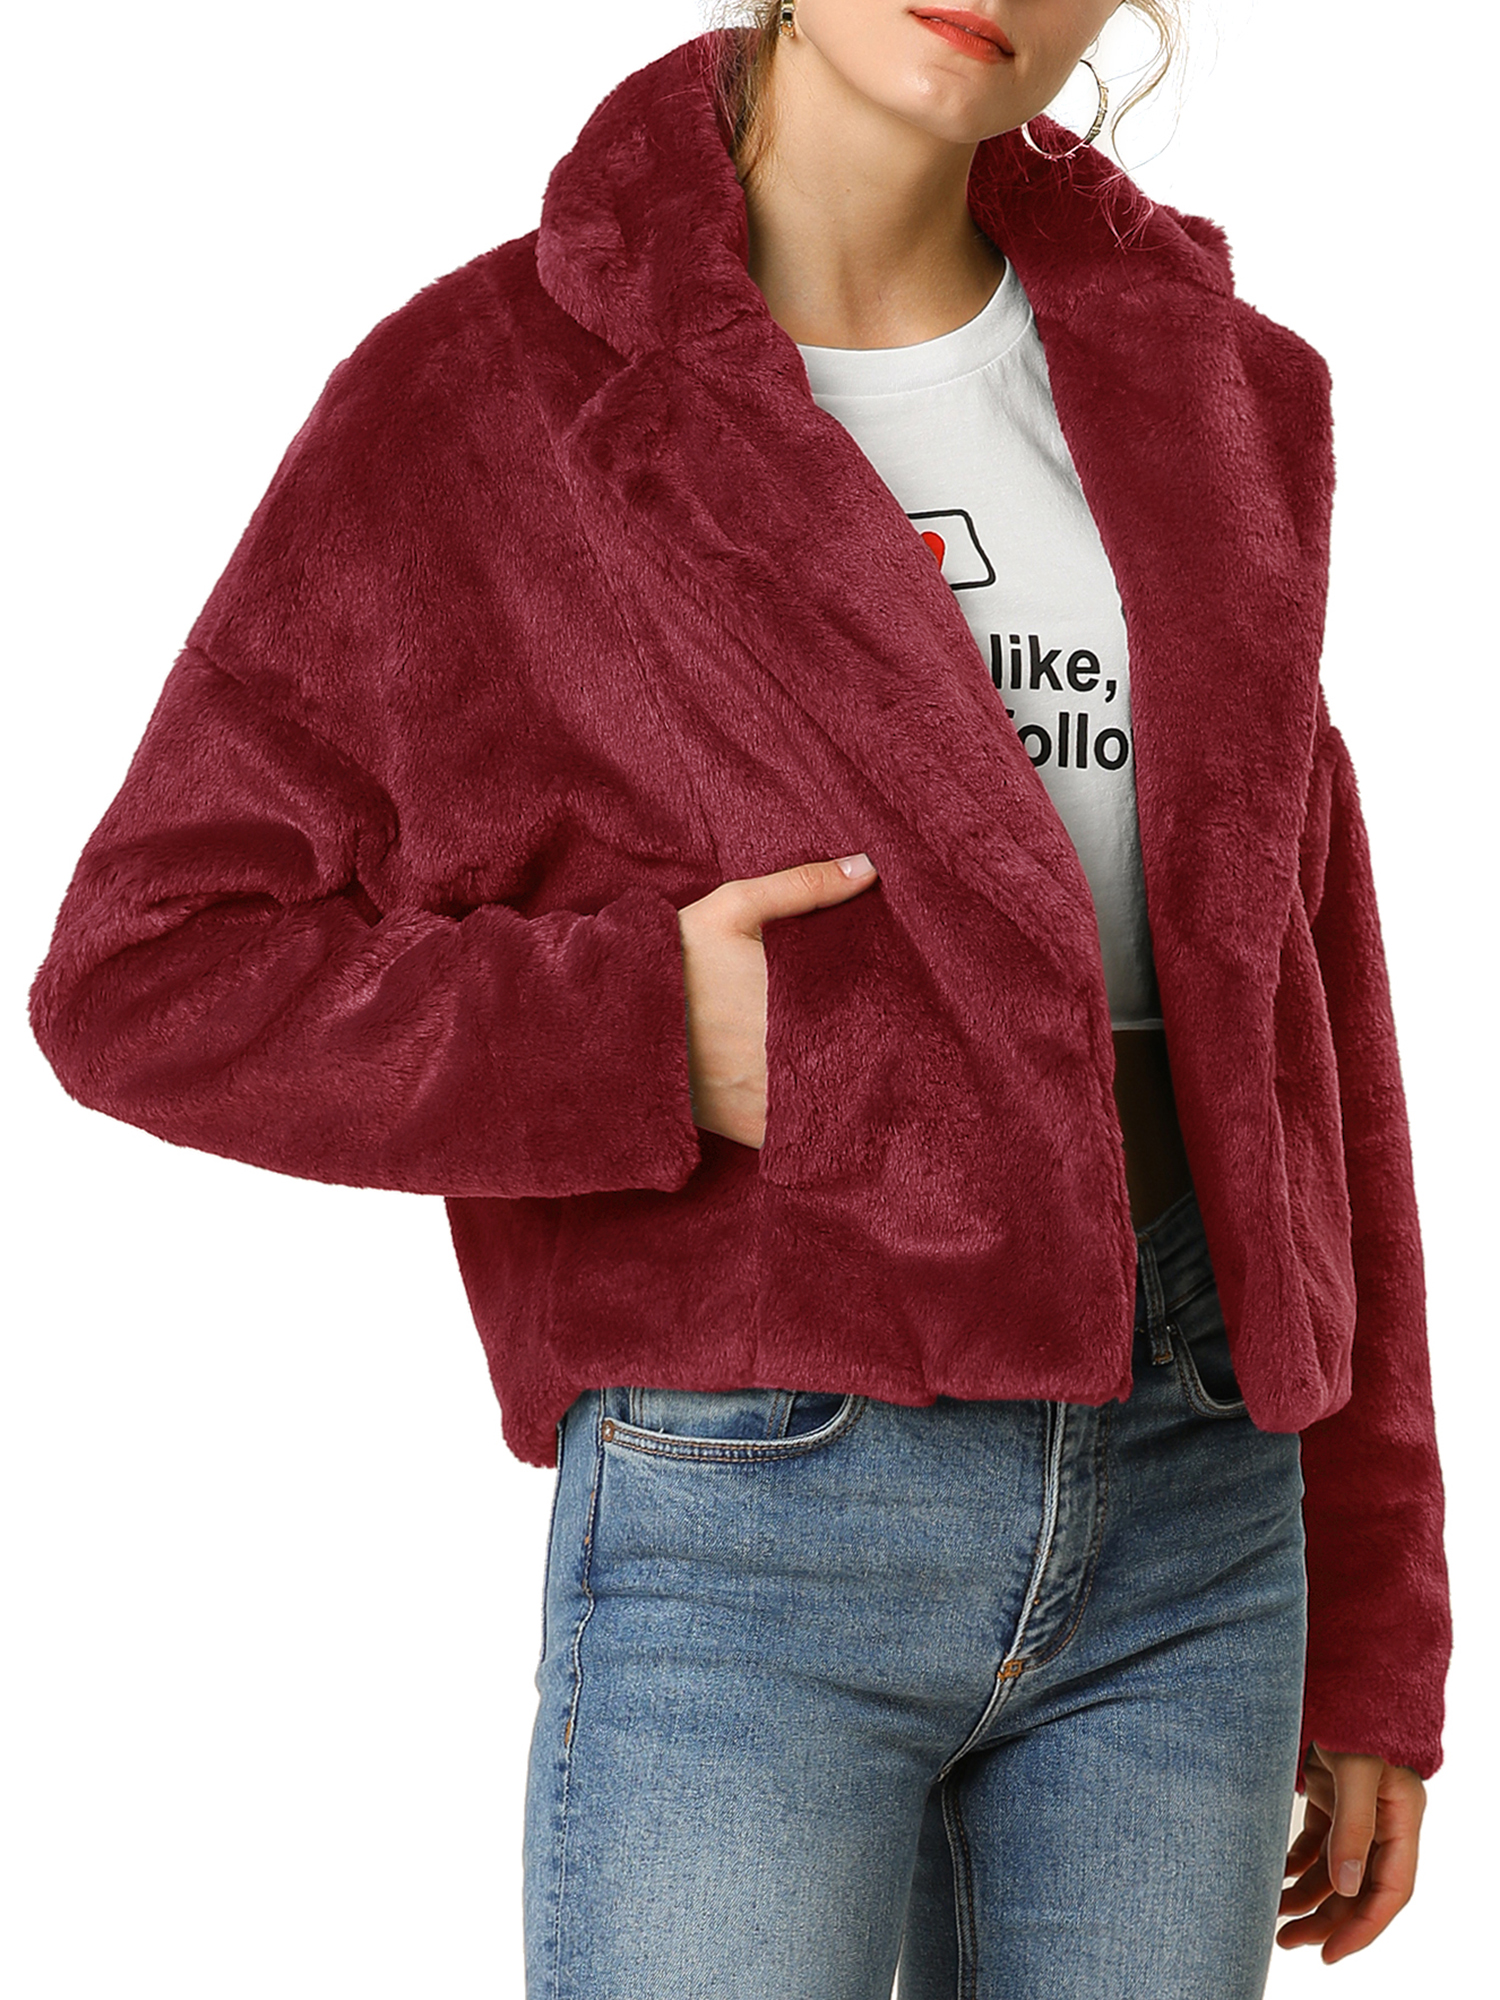 Unique Bargains Women's Cropped Jacket Notch Lapel Faux Fur Fluffy Coat L Burgundy - image 5 of 7